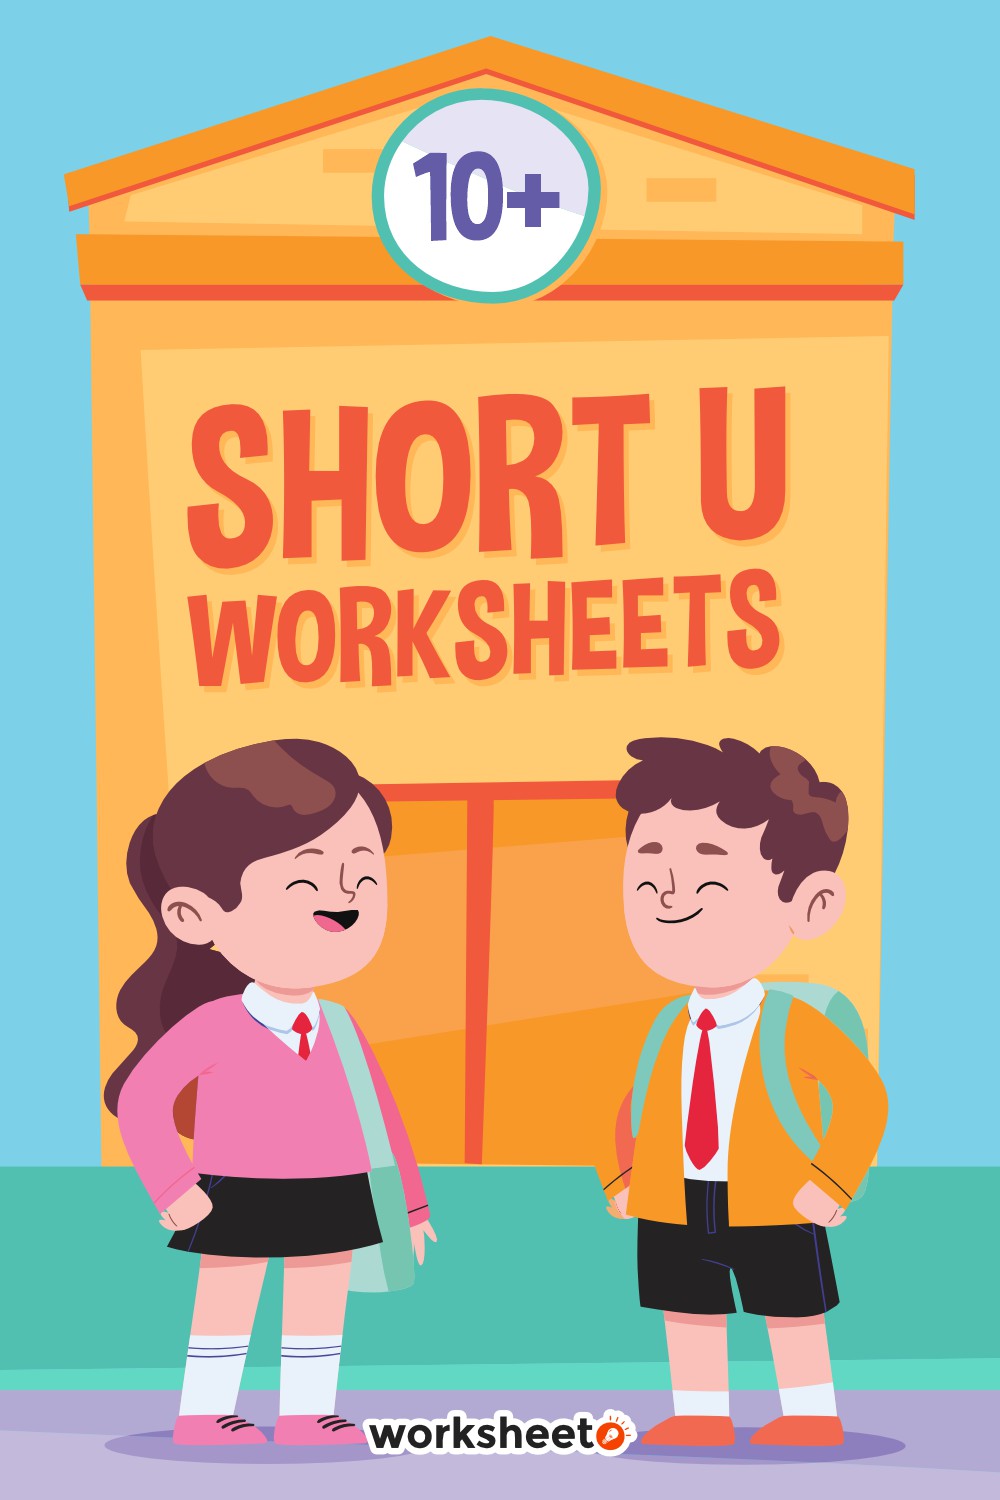 14 Images of Short U Worksheets